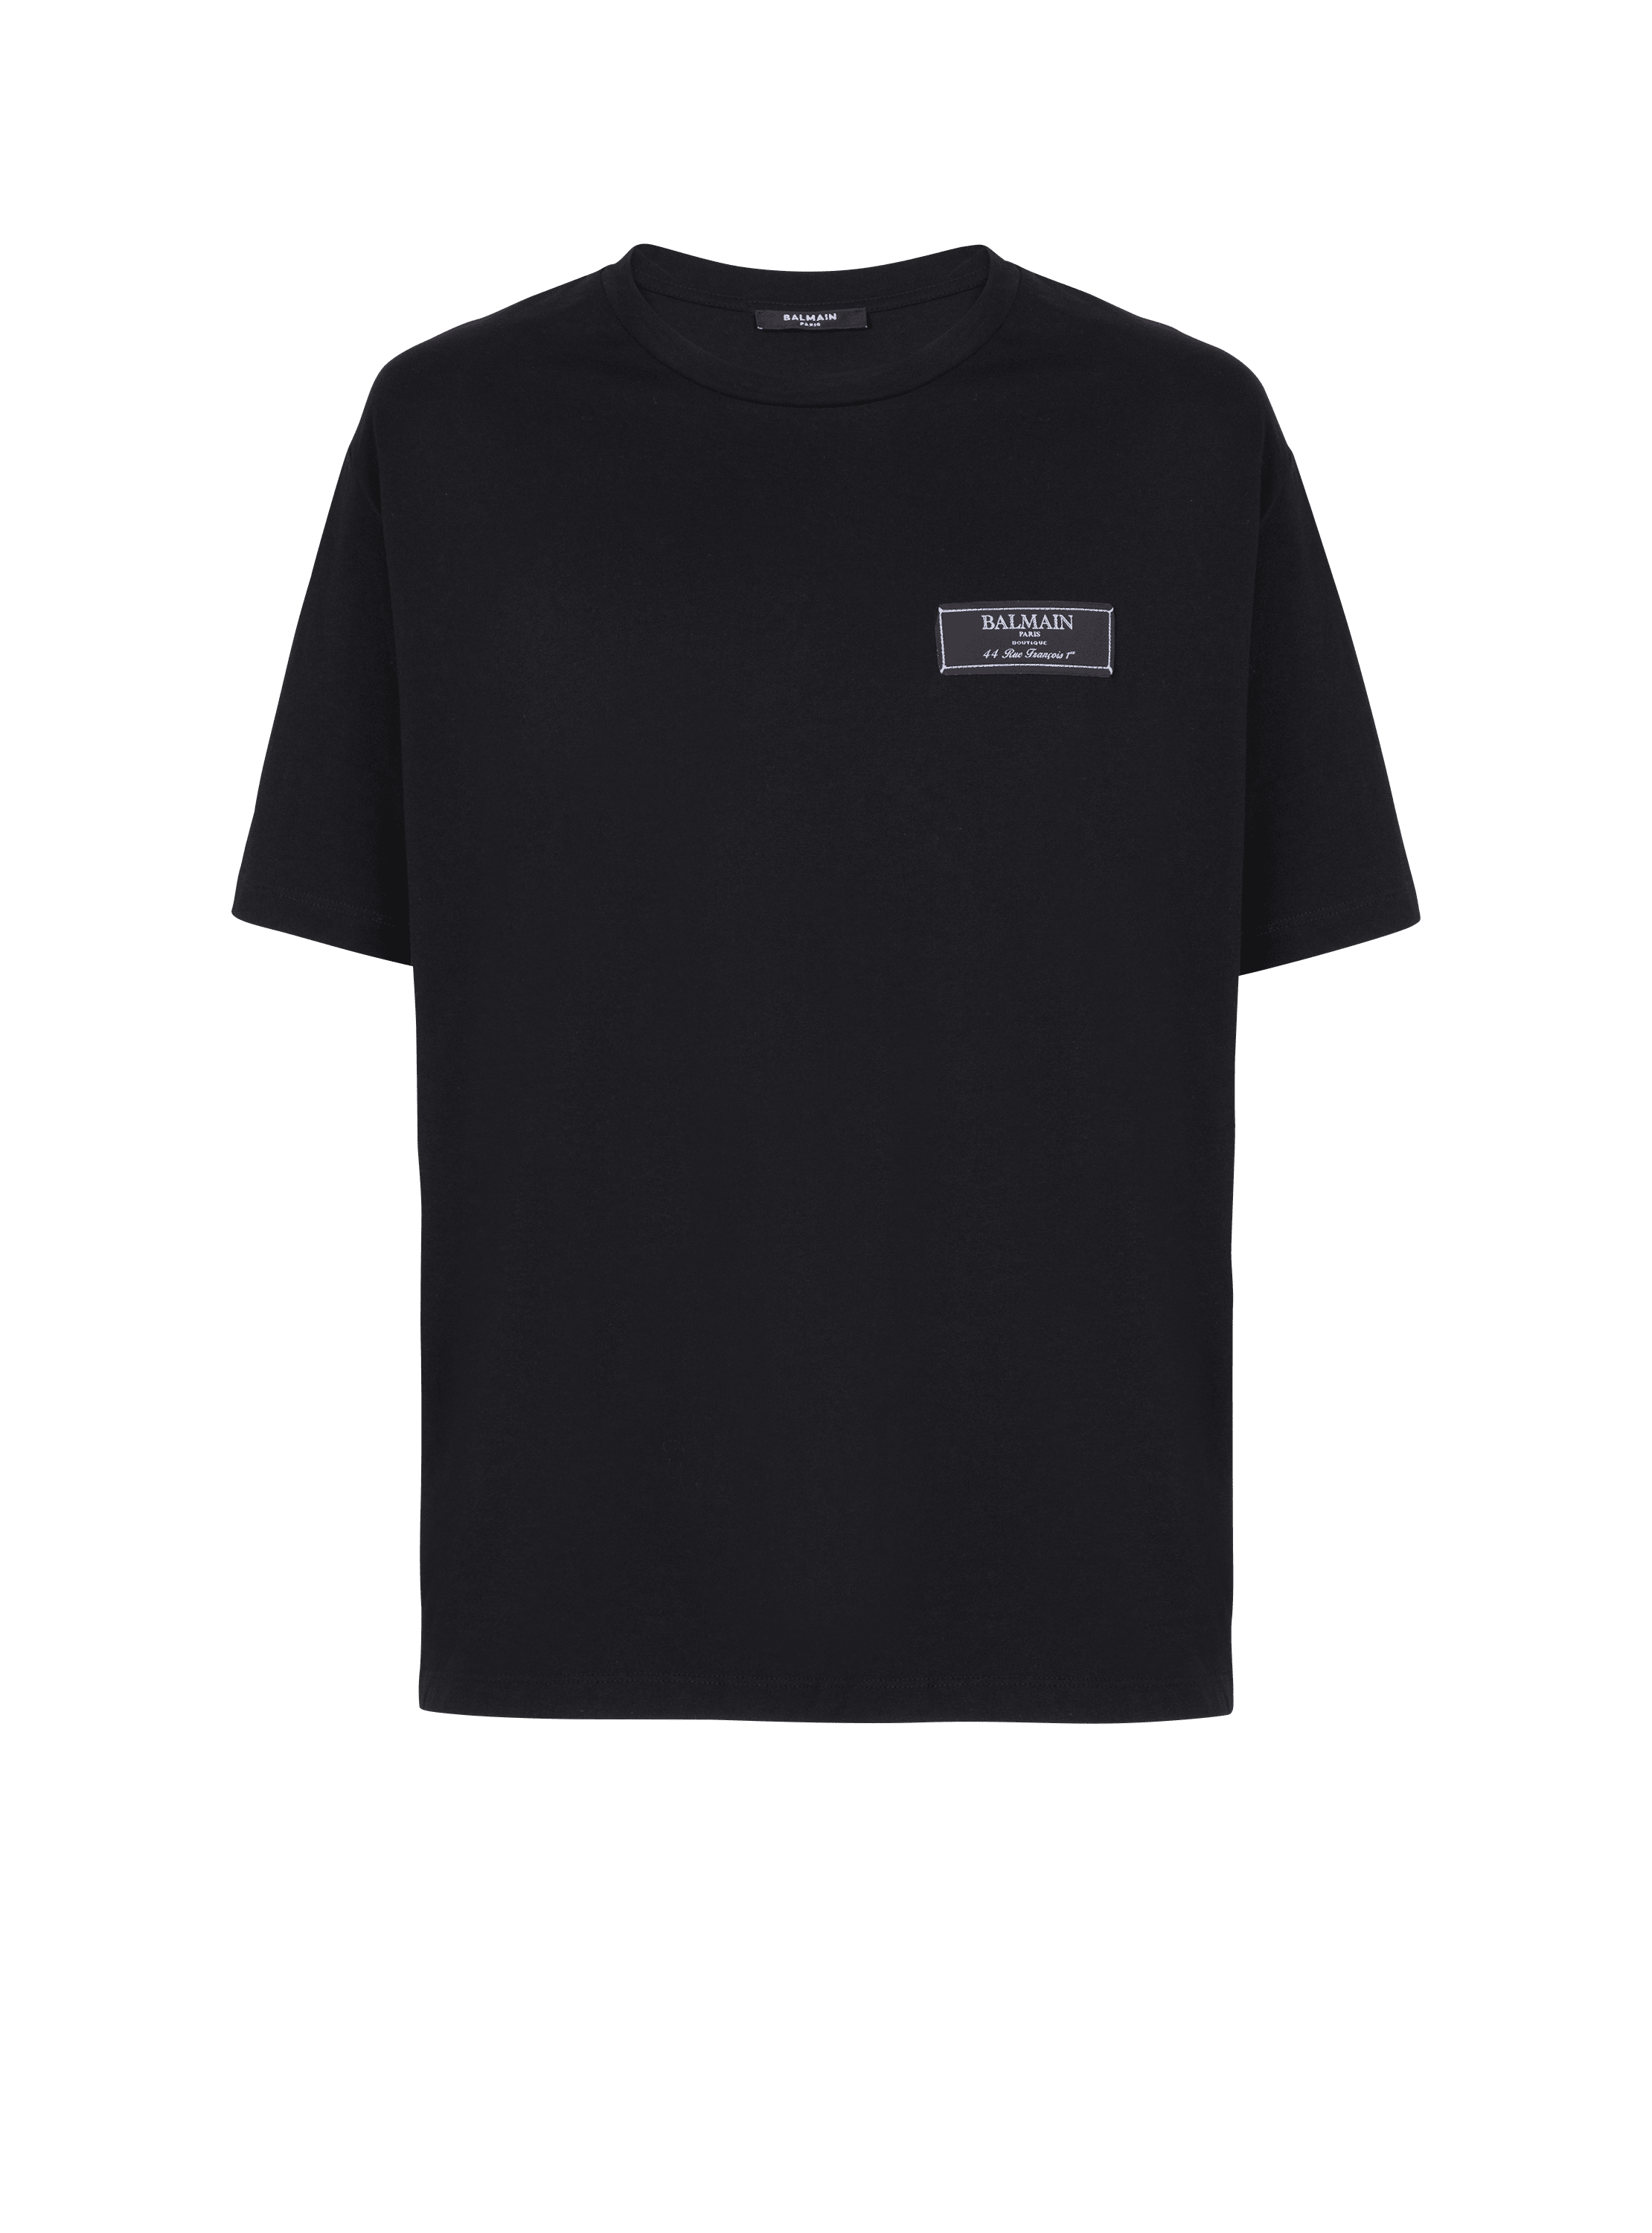 T-Shirt mit Balmain Paris-Etikett, schwarz, hi-res